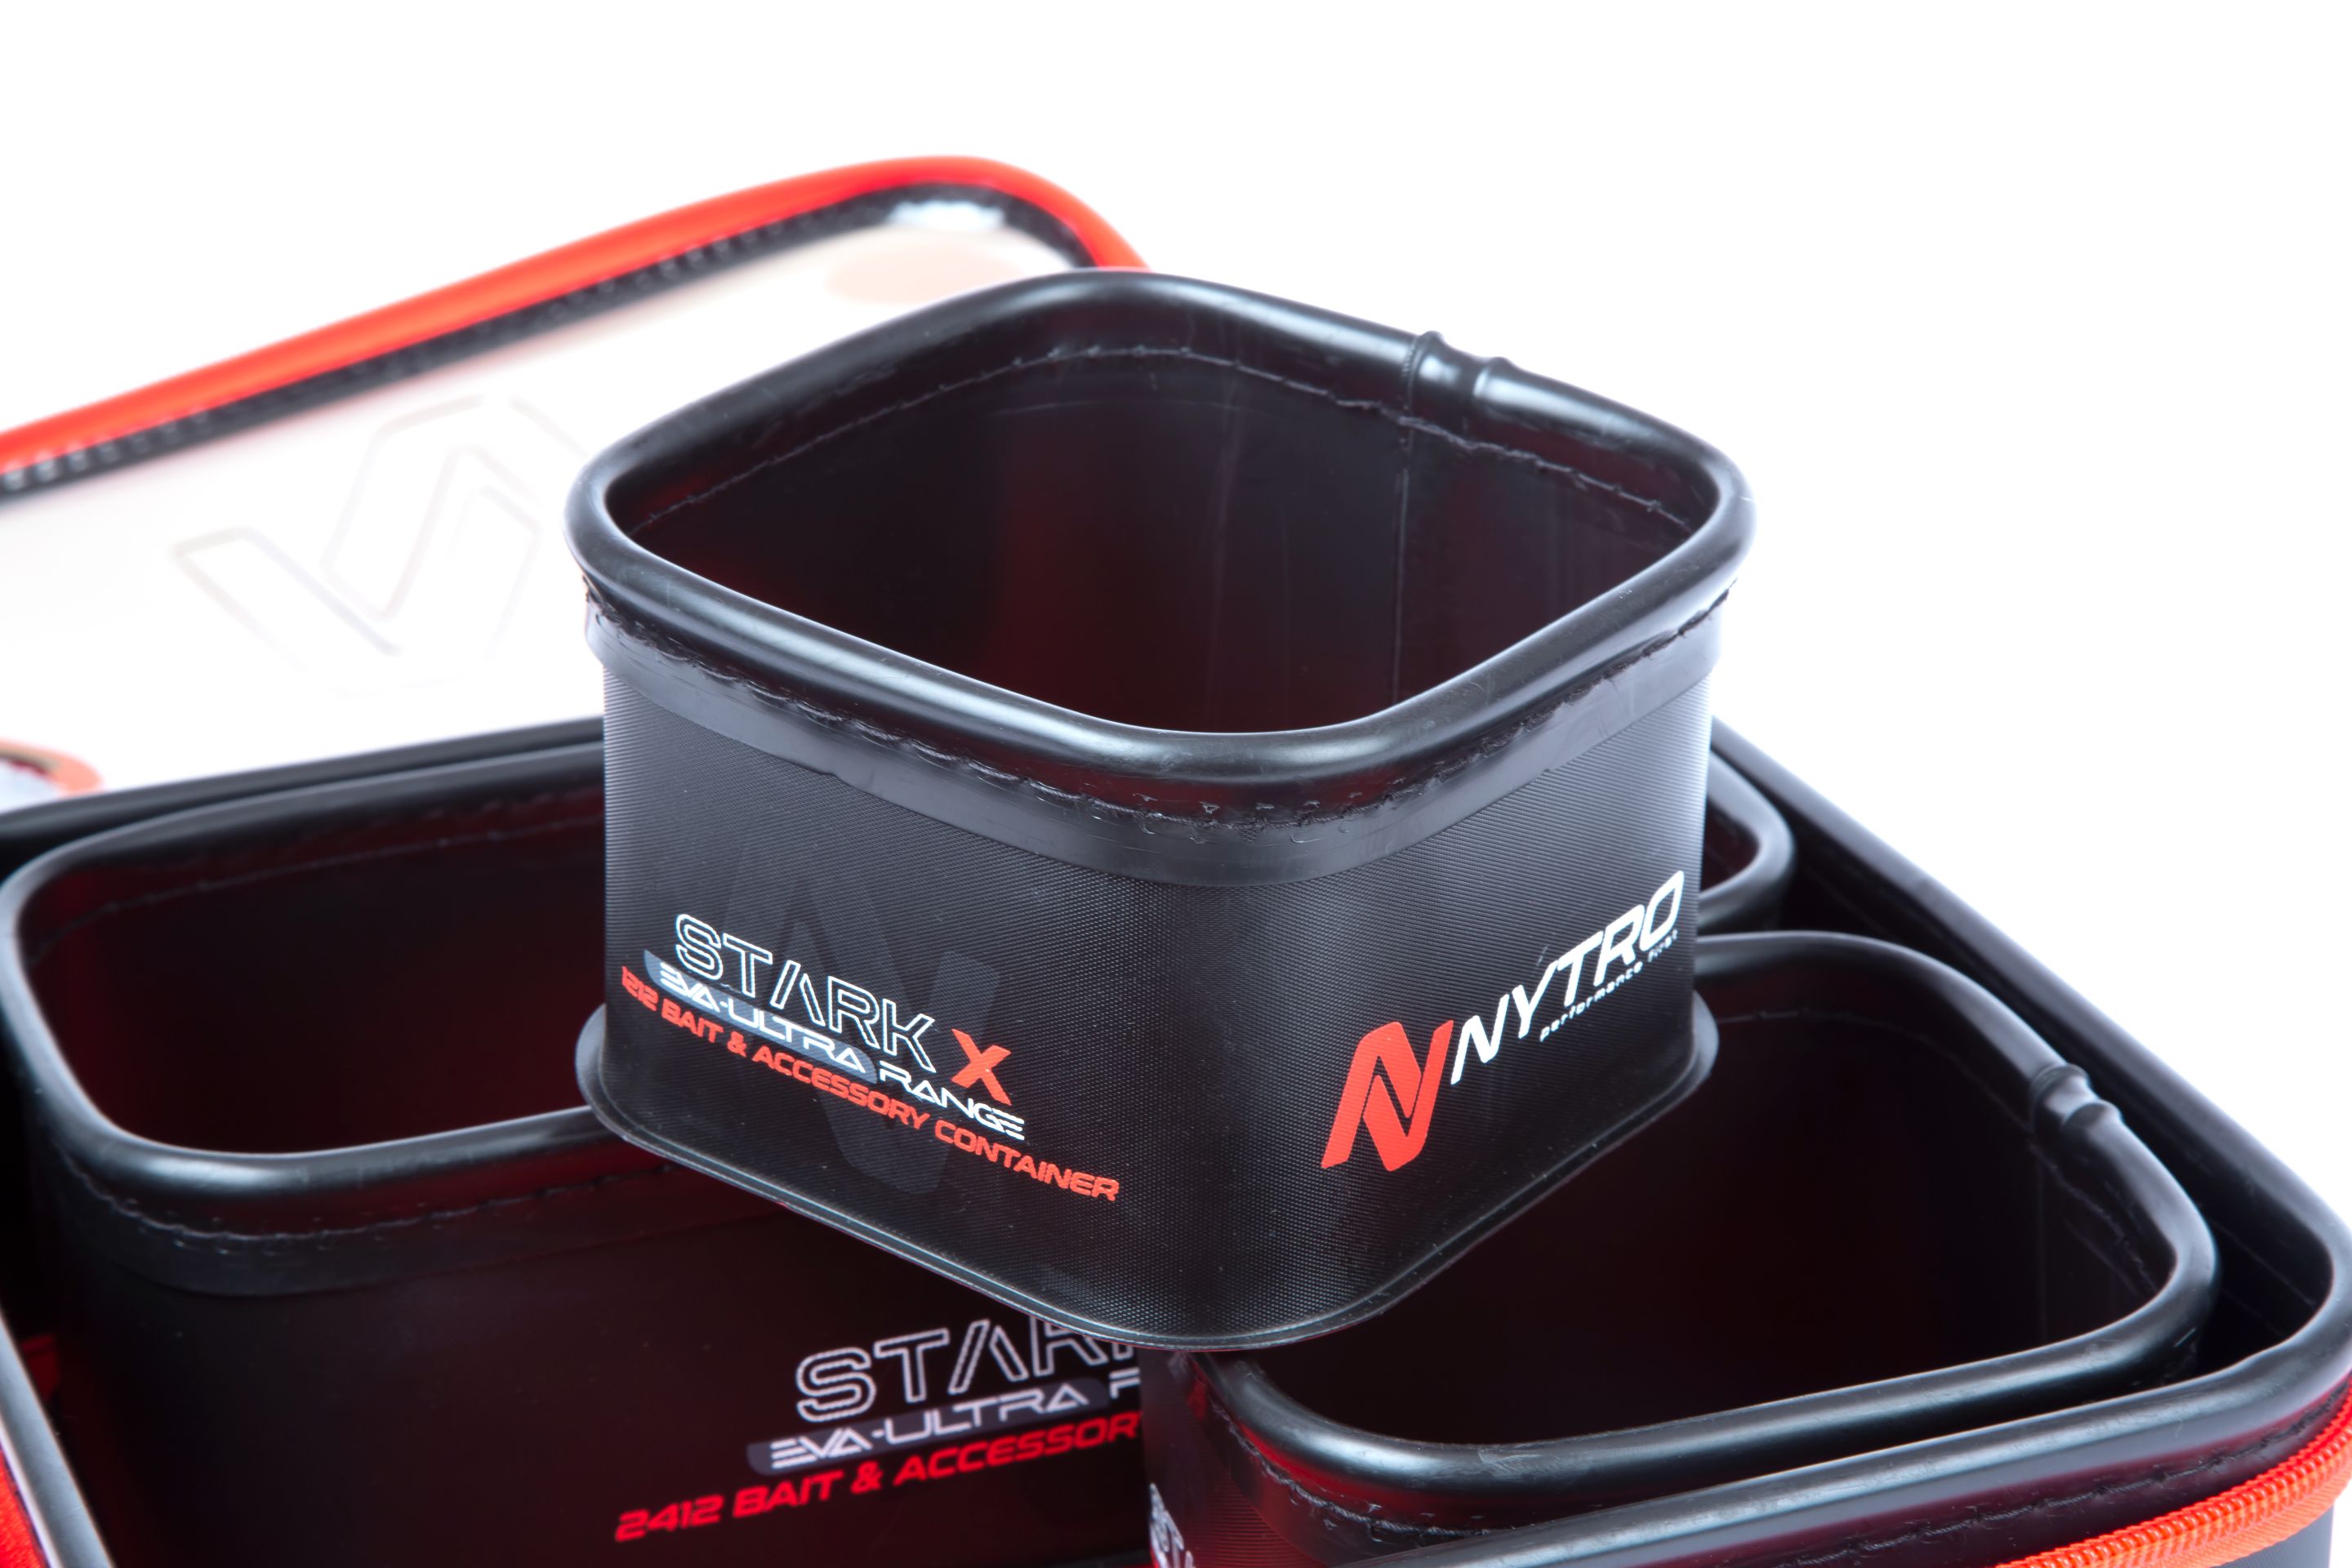 Nytro StarkX 2+1 Feeder Tray System